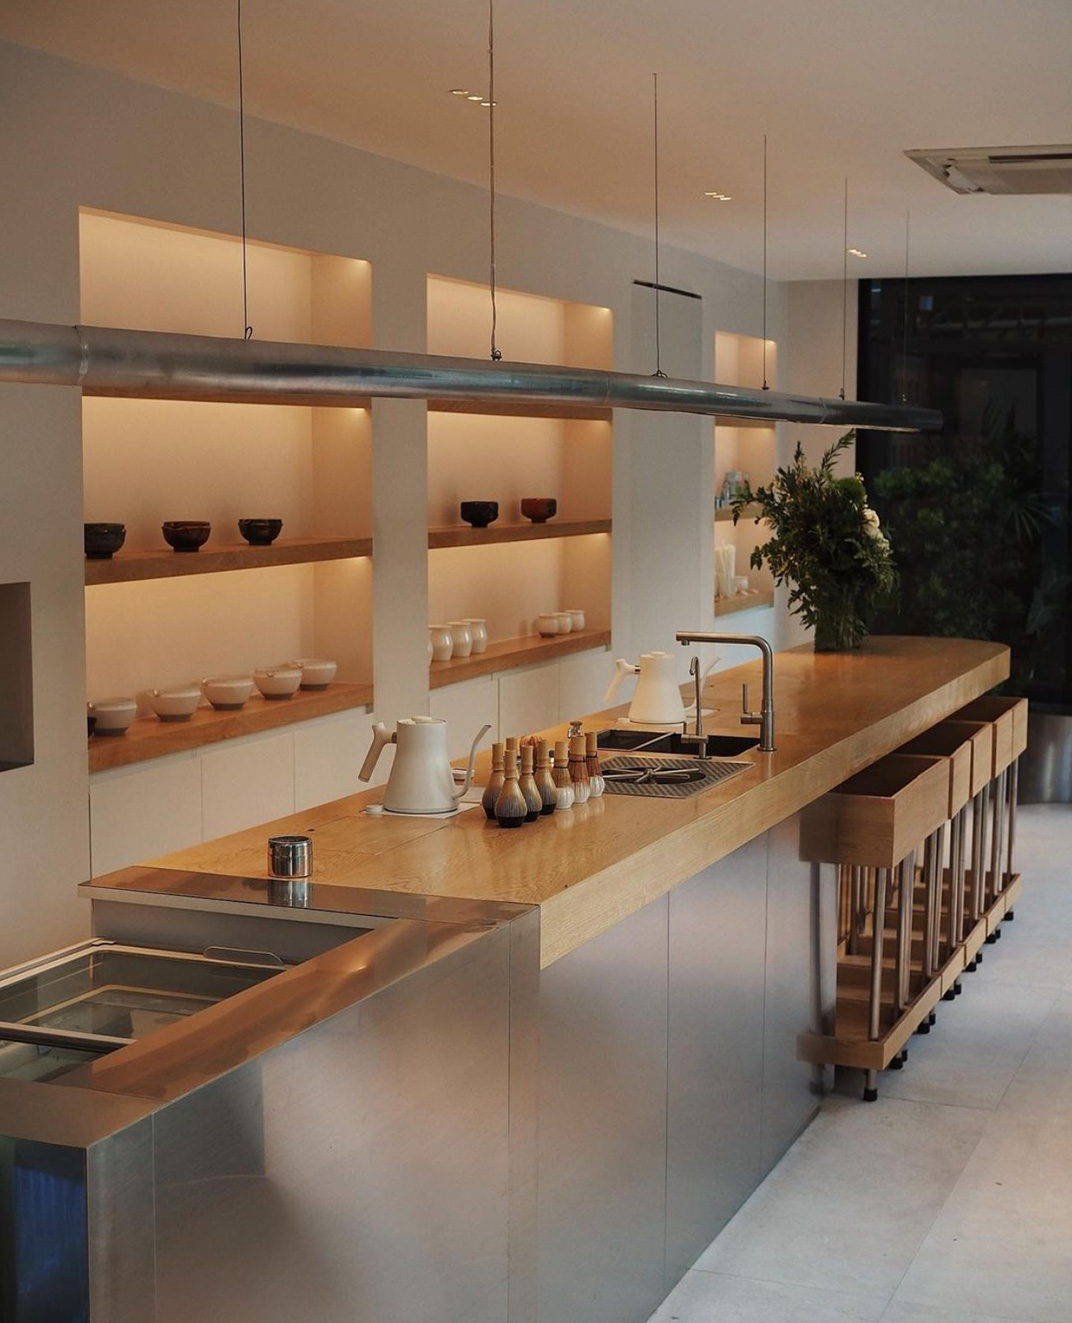 白色调和木头装饰的咖啡店 泰国 曼谷 成都 咖啡店 白色调 木头 不锈钢 logo设计 vi设计 空间设计